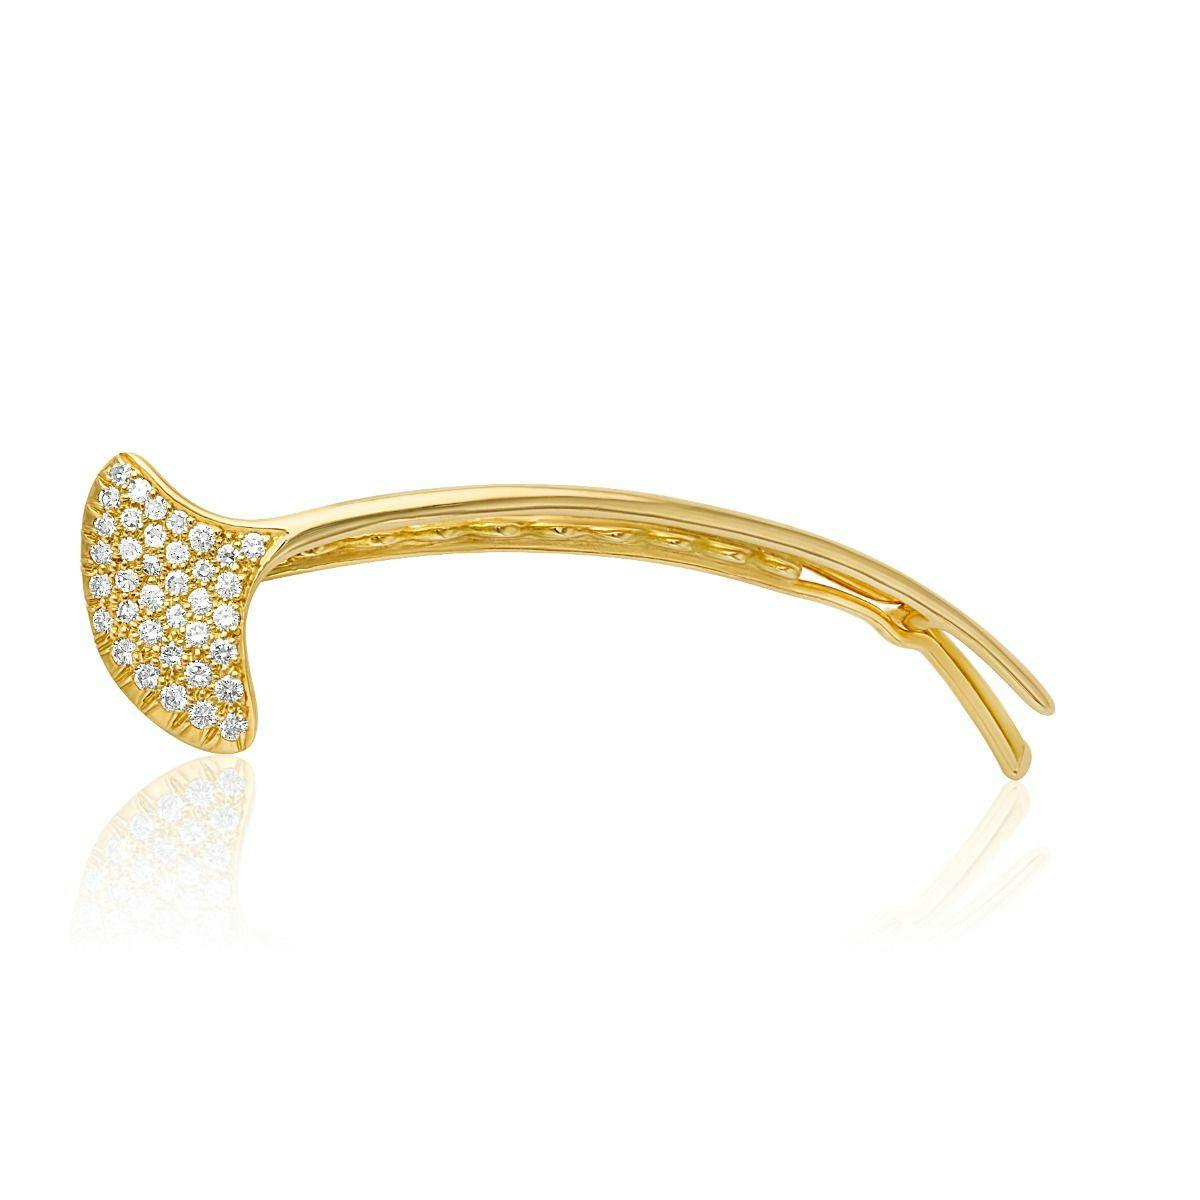 Tiffany & Co. 1970's 18k Yellow Gold Diamond Hair Clip